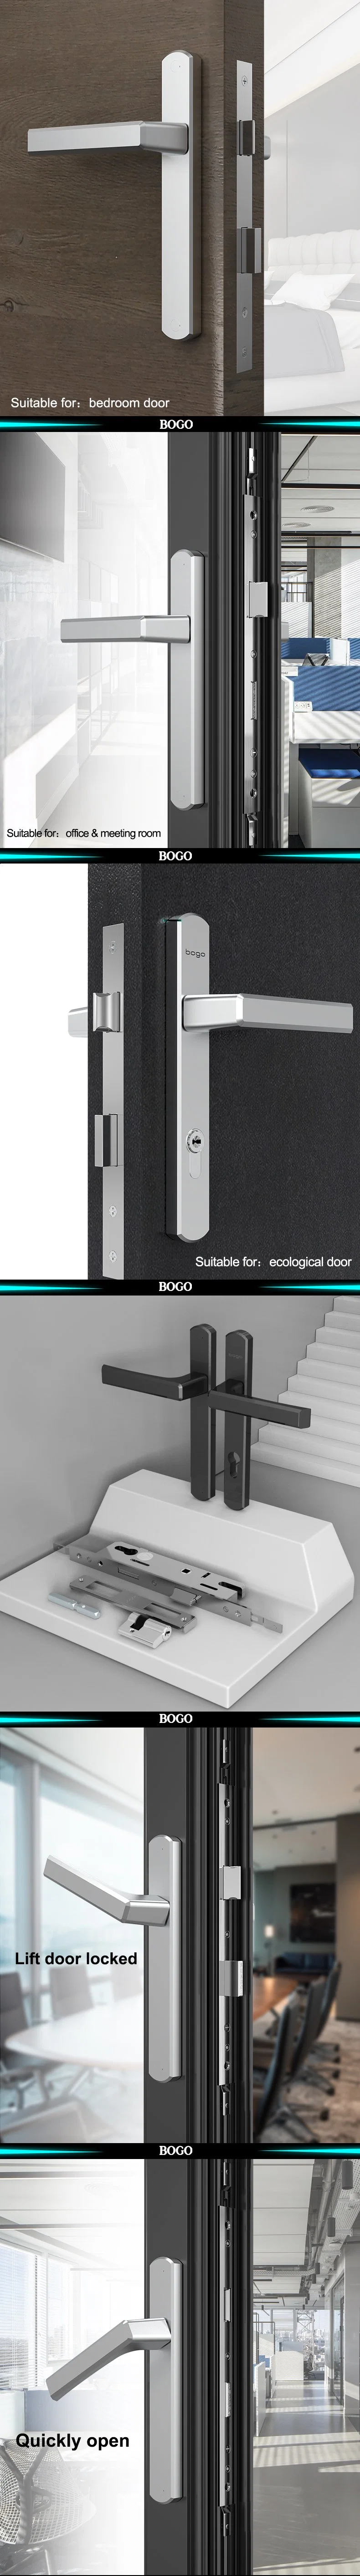 Smart Lock Google Home Commercial Smart Lock Best Front Door Handle Set